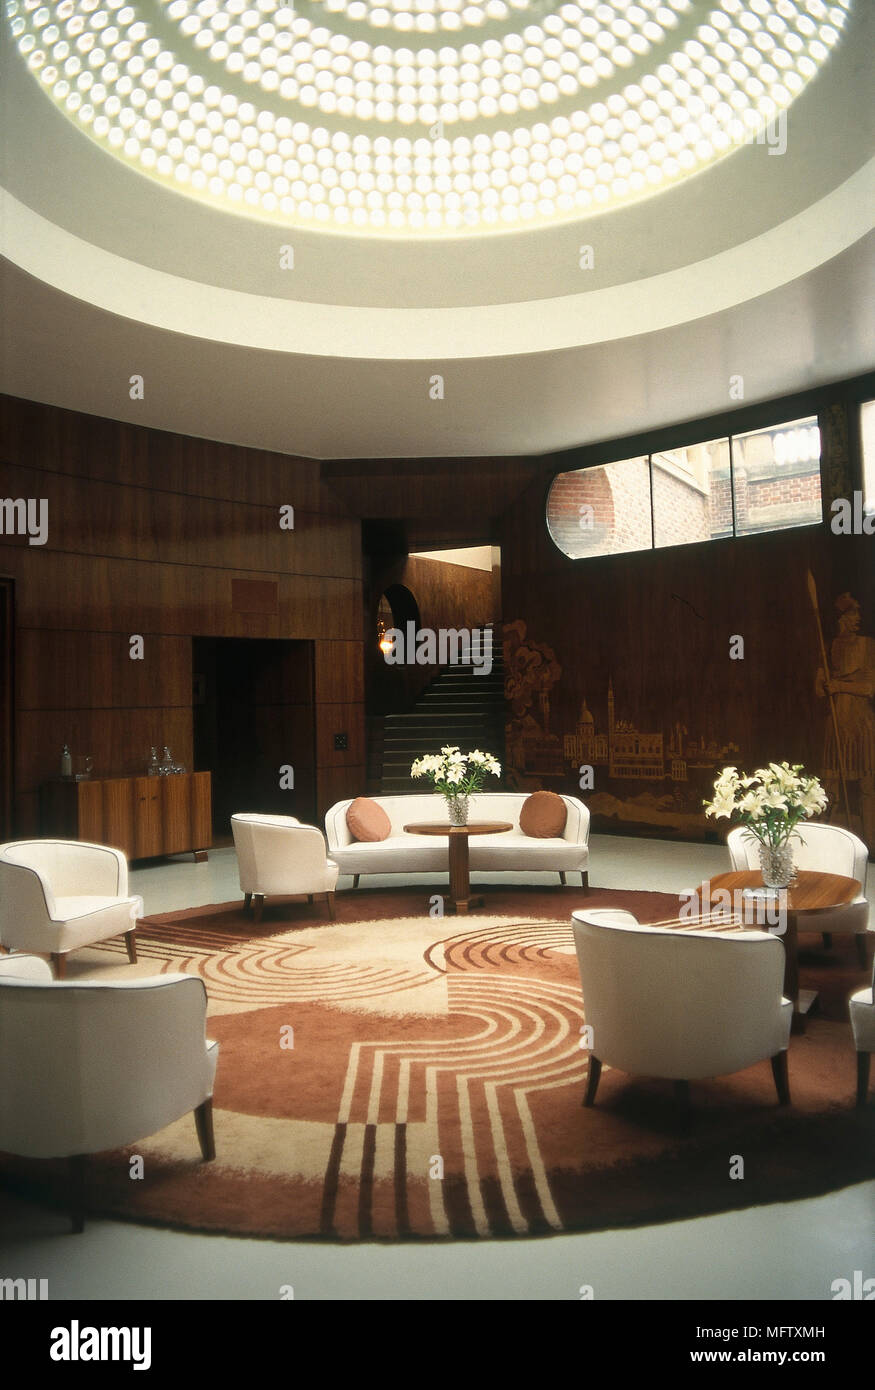 De style moderne, déco salon avec murs en courbe, une coupole circulaire avec lucarne, meubles capitonnés, et une table ronde, des tapis. Banque D'Images